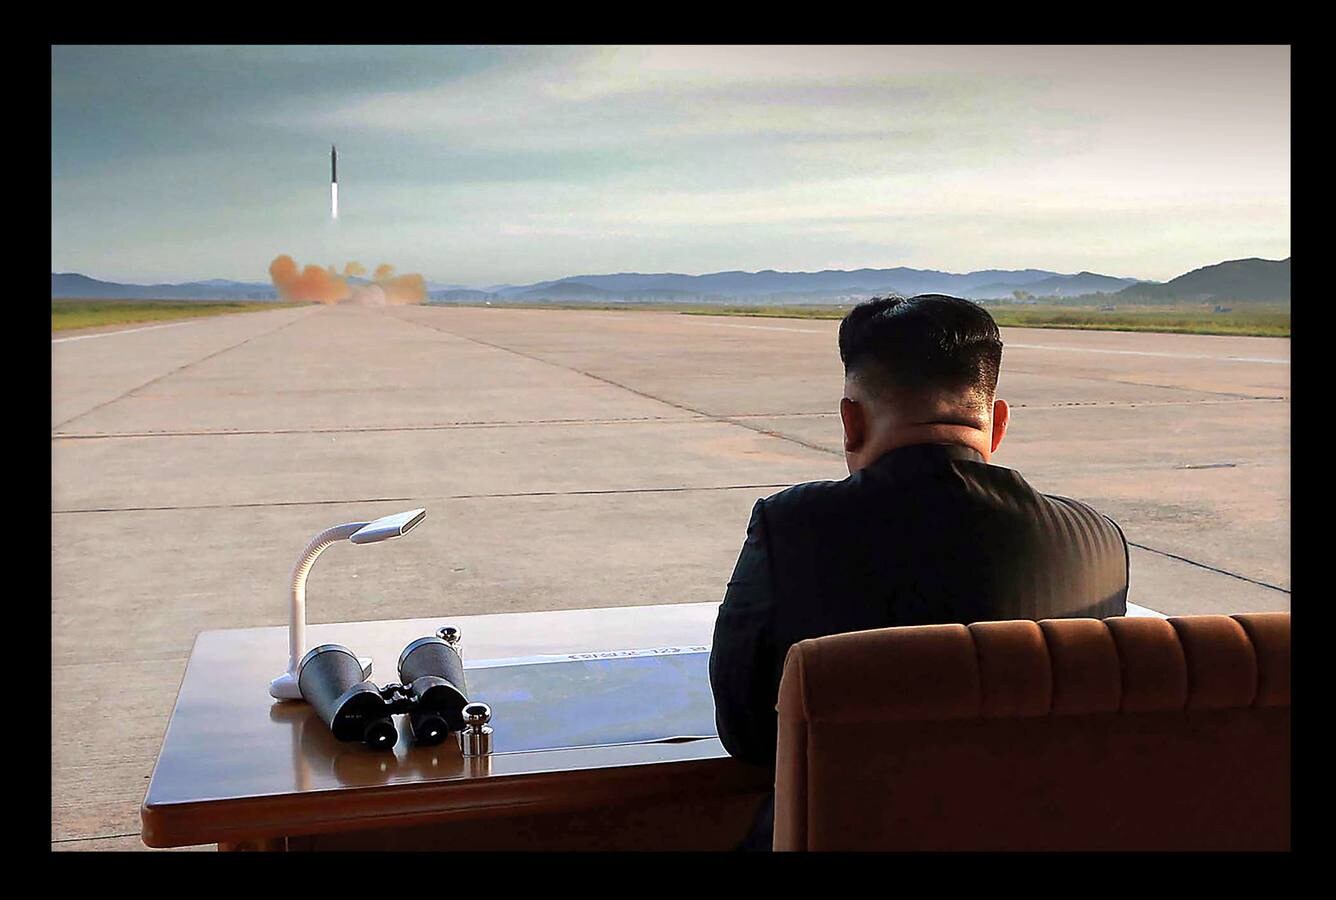 Septiembre 2017. El líder norcoreano Kim Jong-un observa la prueba de lanzamiento de un misil de corta-media distancia en una localización remota.